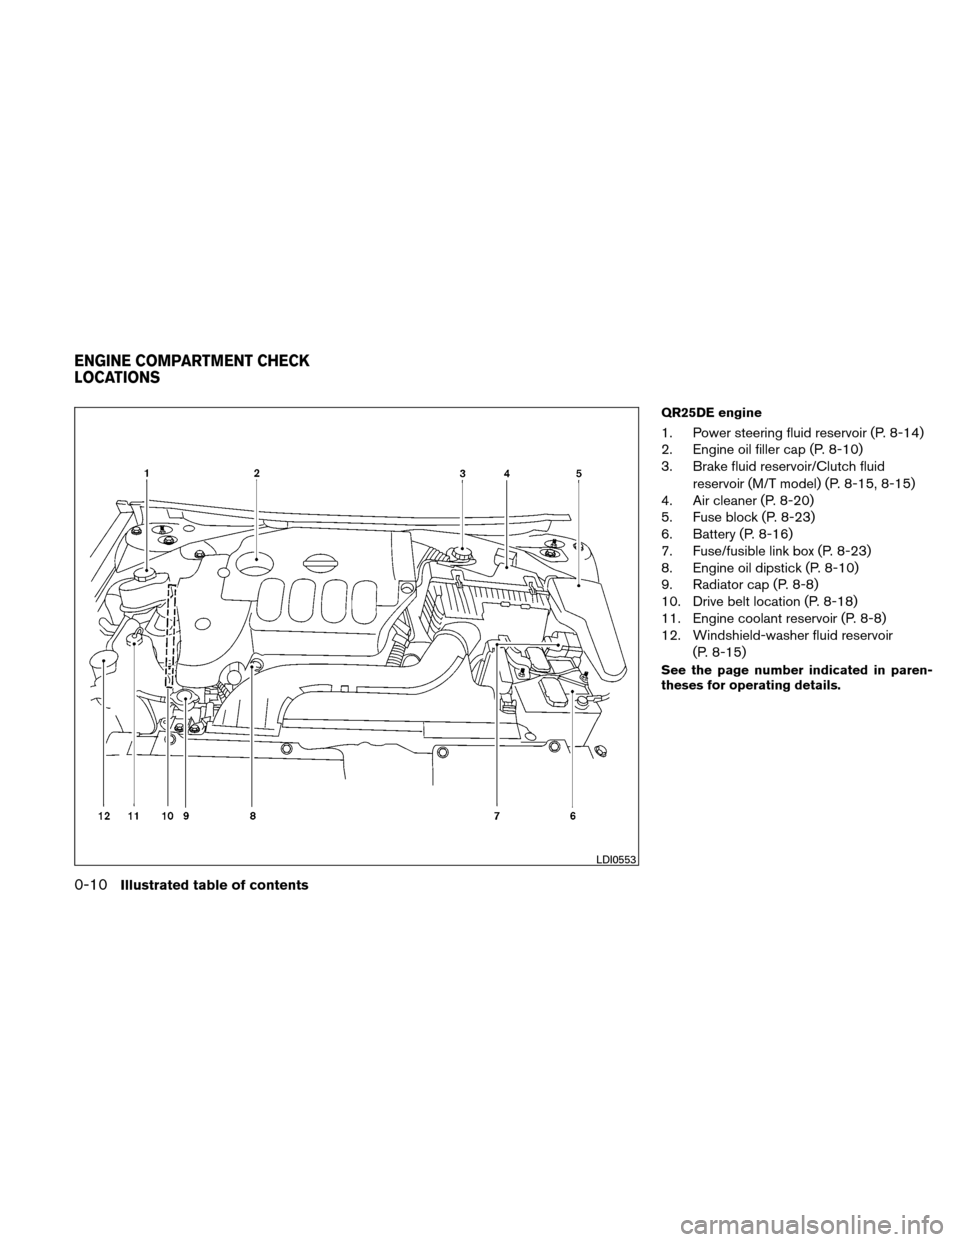 NISSAN ALTIMA COUPE 2011 D32 / 4.G Owners Manual QR25DE engine
1. Power steering fluid reservoir (P. 8-14)
2. Engine oil filler cap (P. 8-10)
3. Brake fluid reservoir/Clutch fluidreservoir (M/T model) (P. 8-15, 8-15)
4. Air cleaner (P. 8-20)
5. Fuse